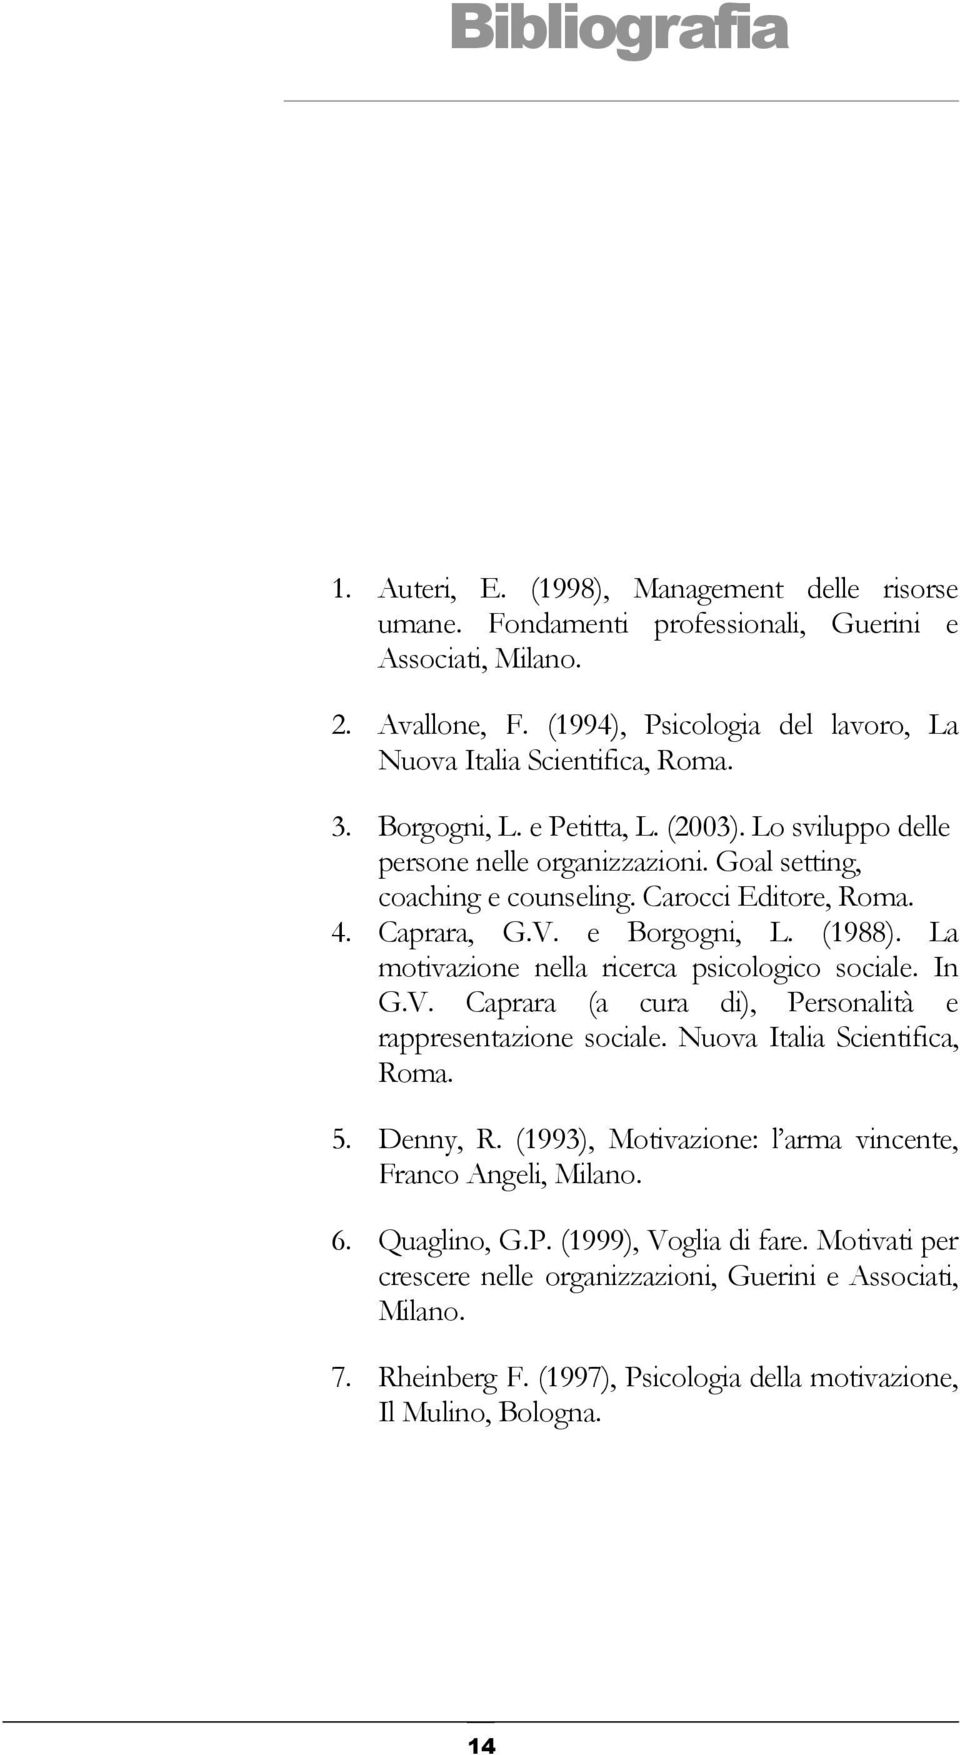 Carocci Editore, Roma. 4. Caprara, G.V. e Borgogni, L. (1988). La motivazione nella ricerca psicologico sociale. In G.V. Caprara (a cura di), Personalità e rappresentazione sociale.